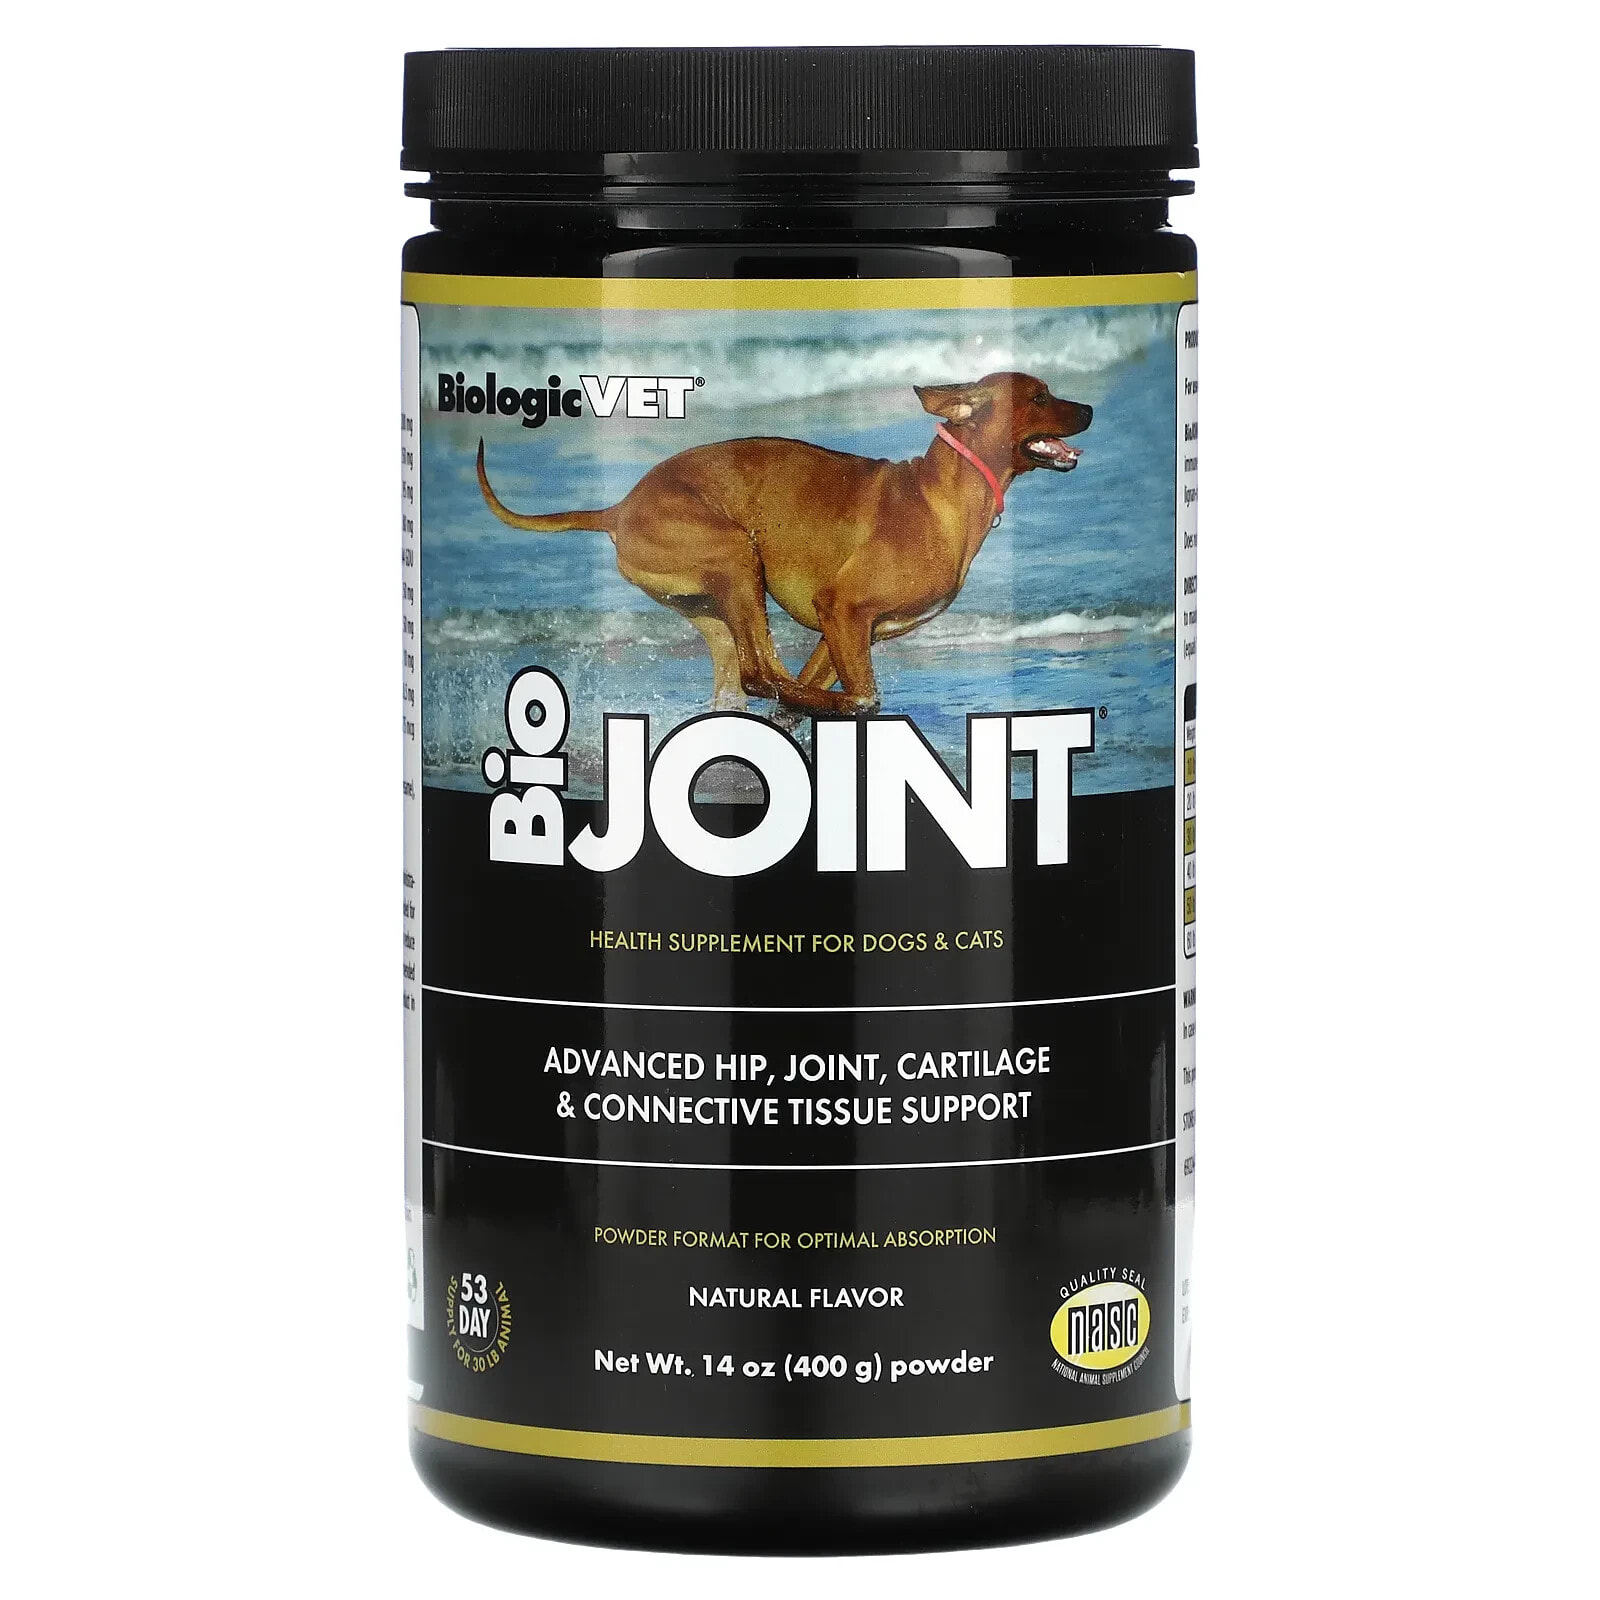 Flora, BioJoint, добавка для здоровья собак и кошек, натуральная, 400 г (14 унций)